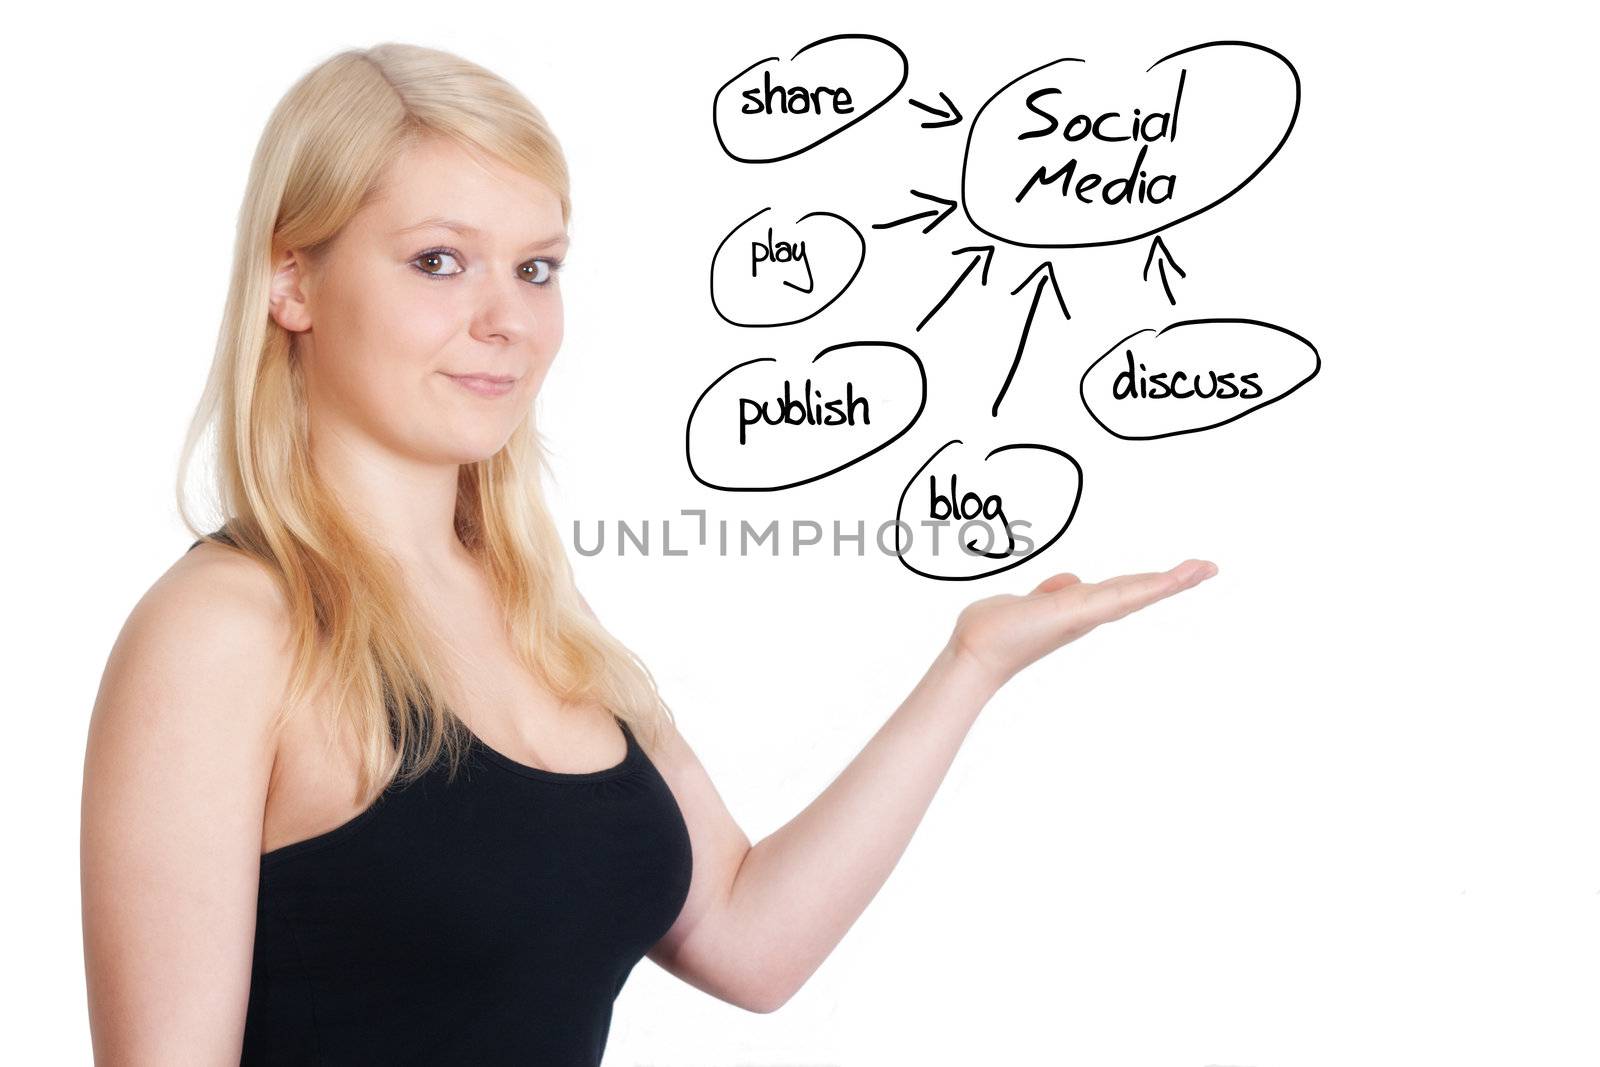 blonde business woman explaining social media on whiteboard